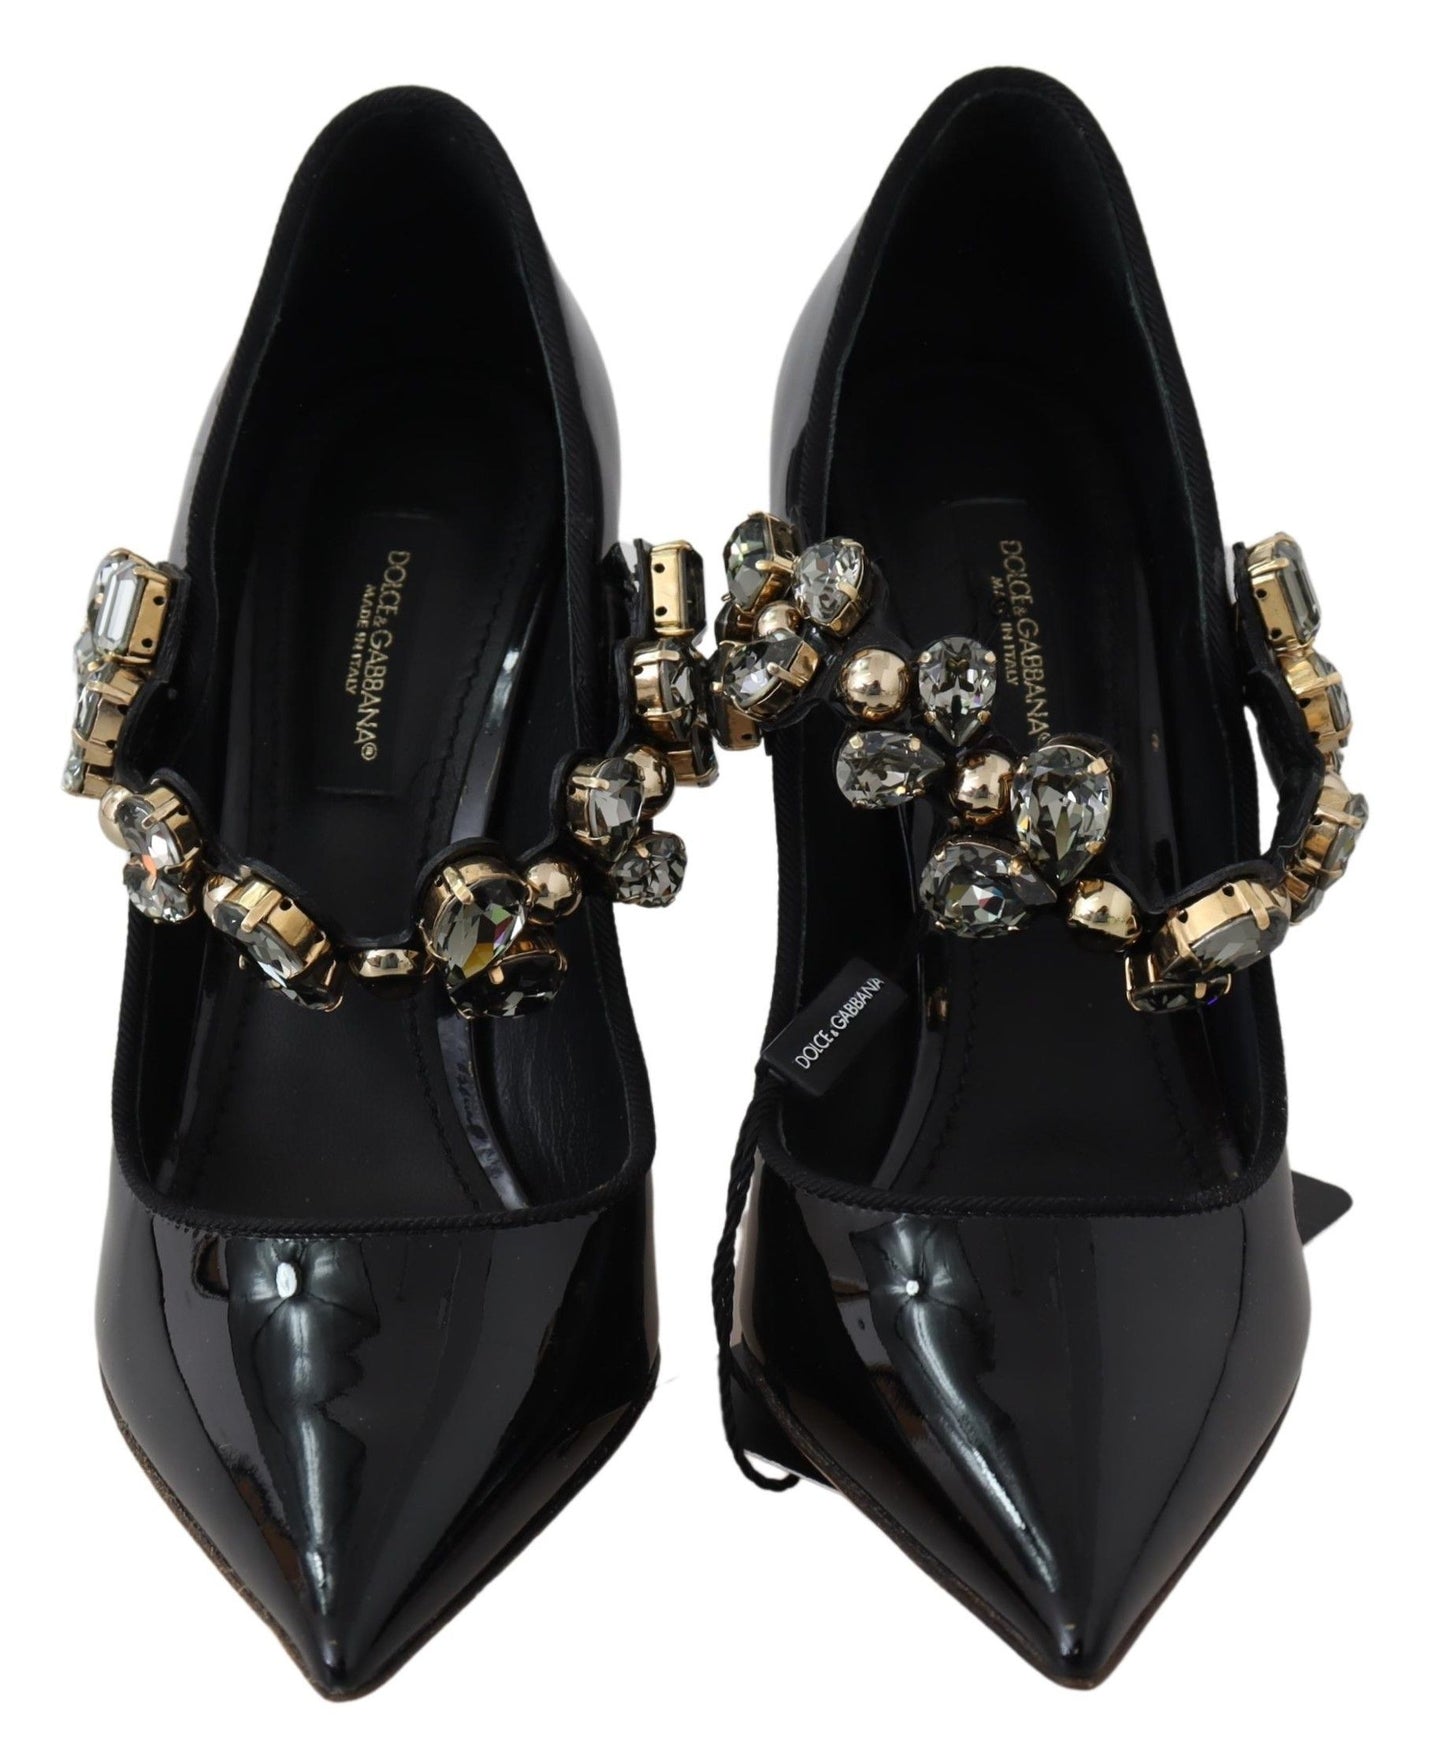 Dolce & Gabbana Elegant Black Leather Crystal Pumps